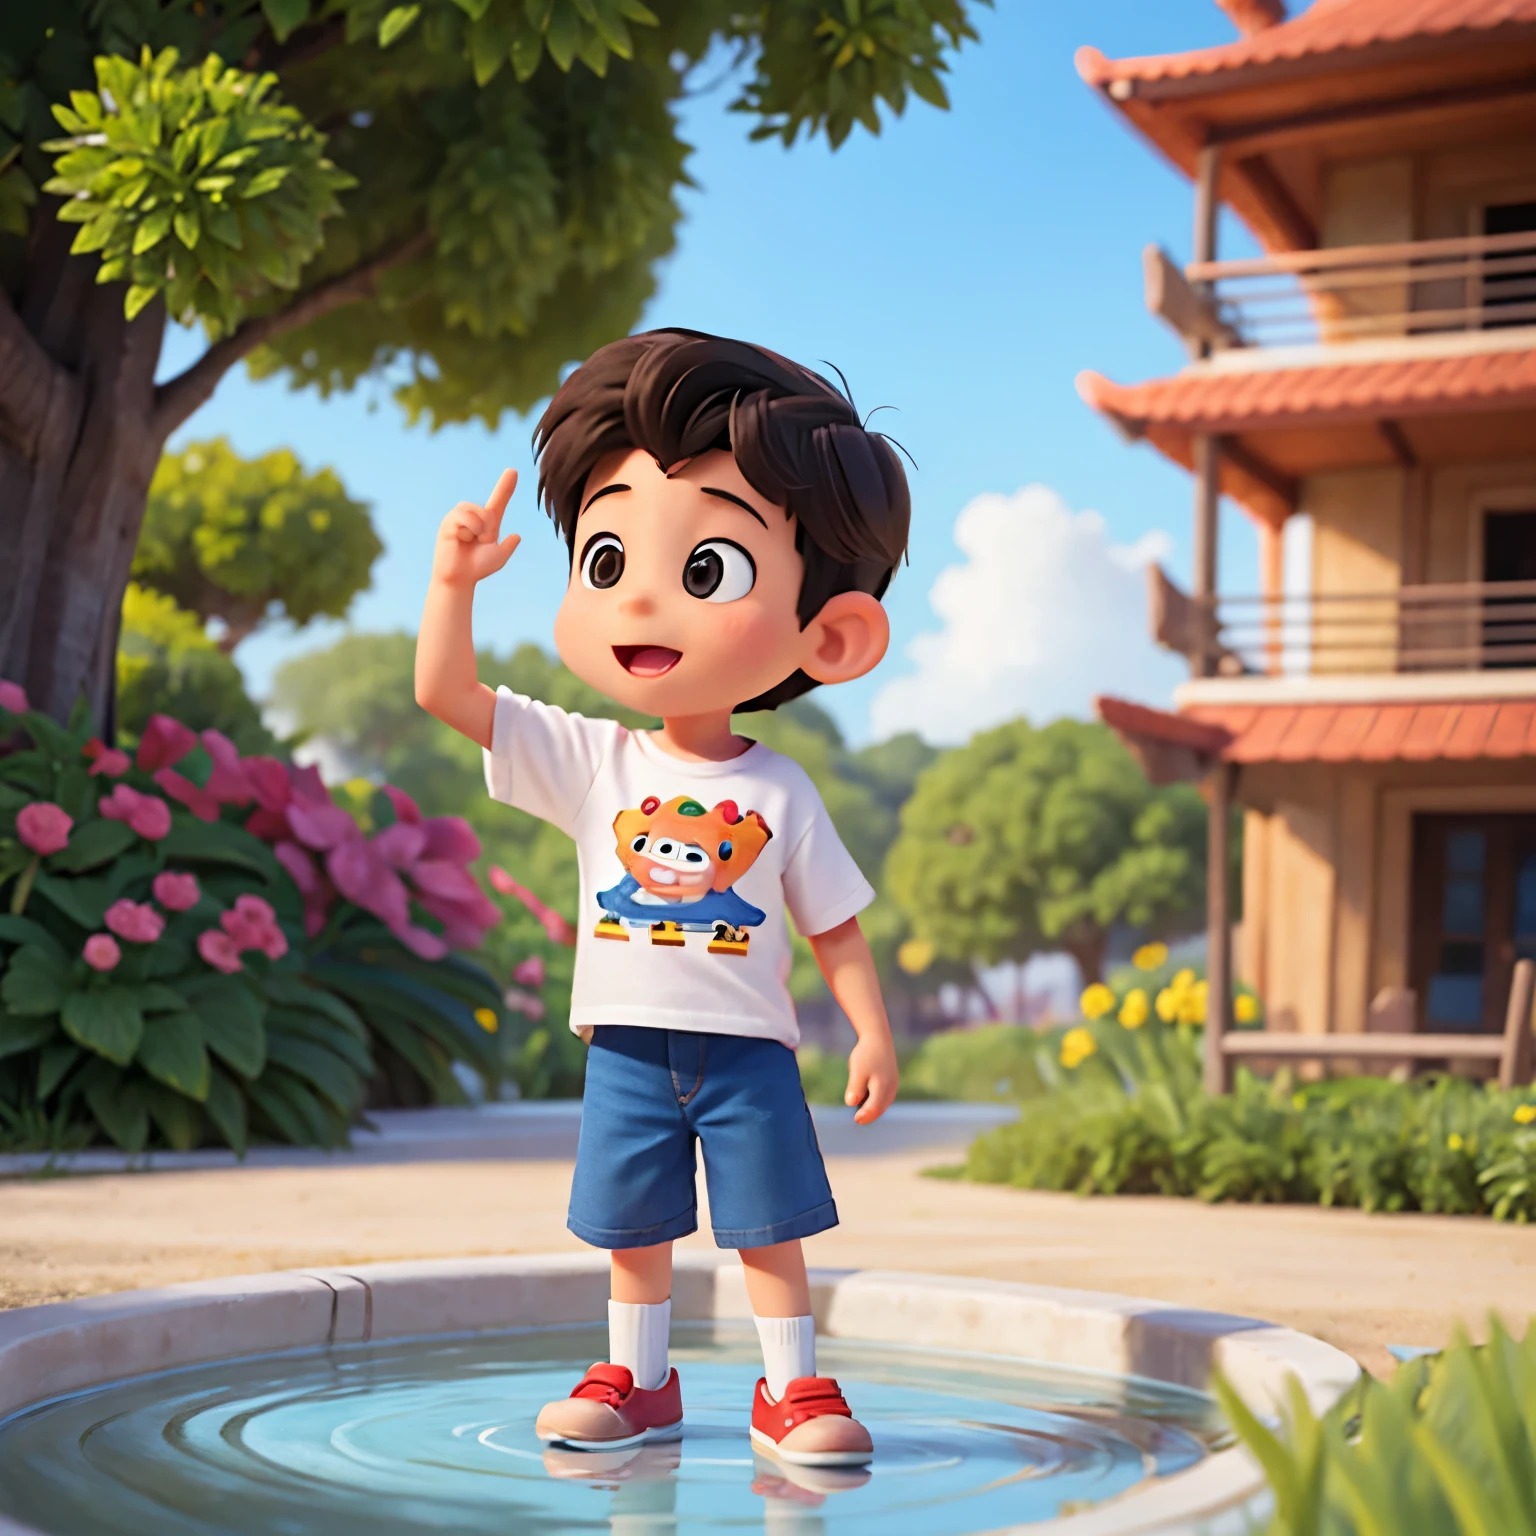 Dessin animé Disney représentant un petit garçon disant Danang sur sa chemise